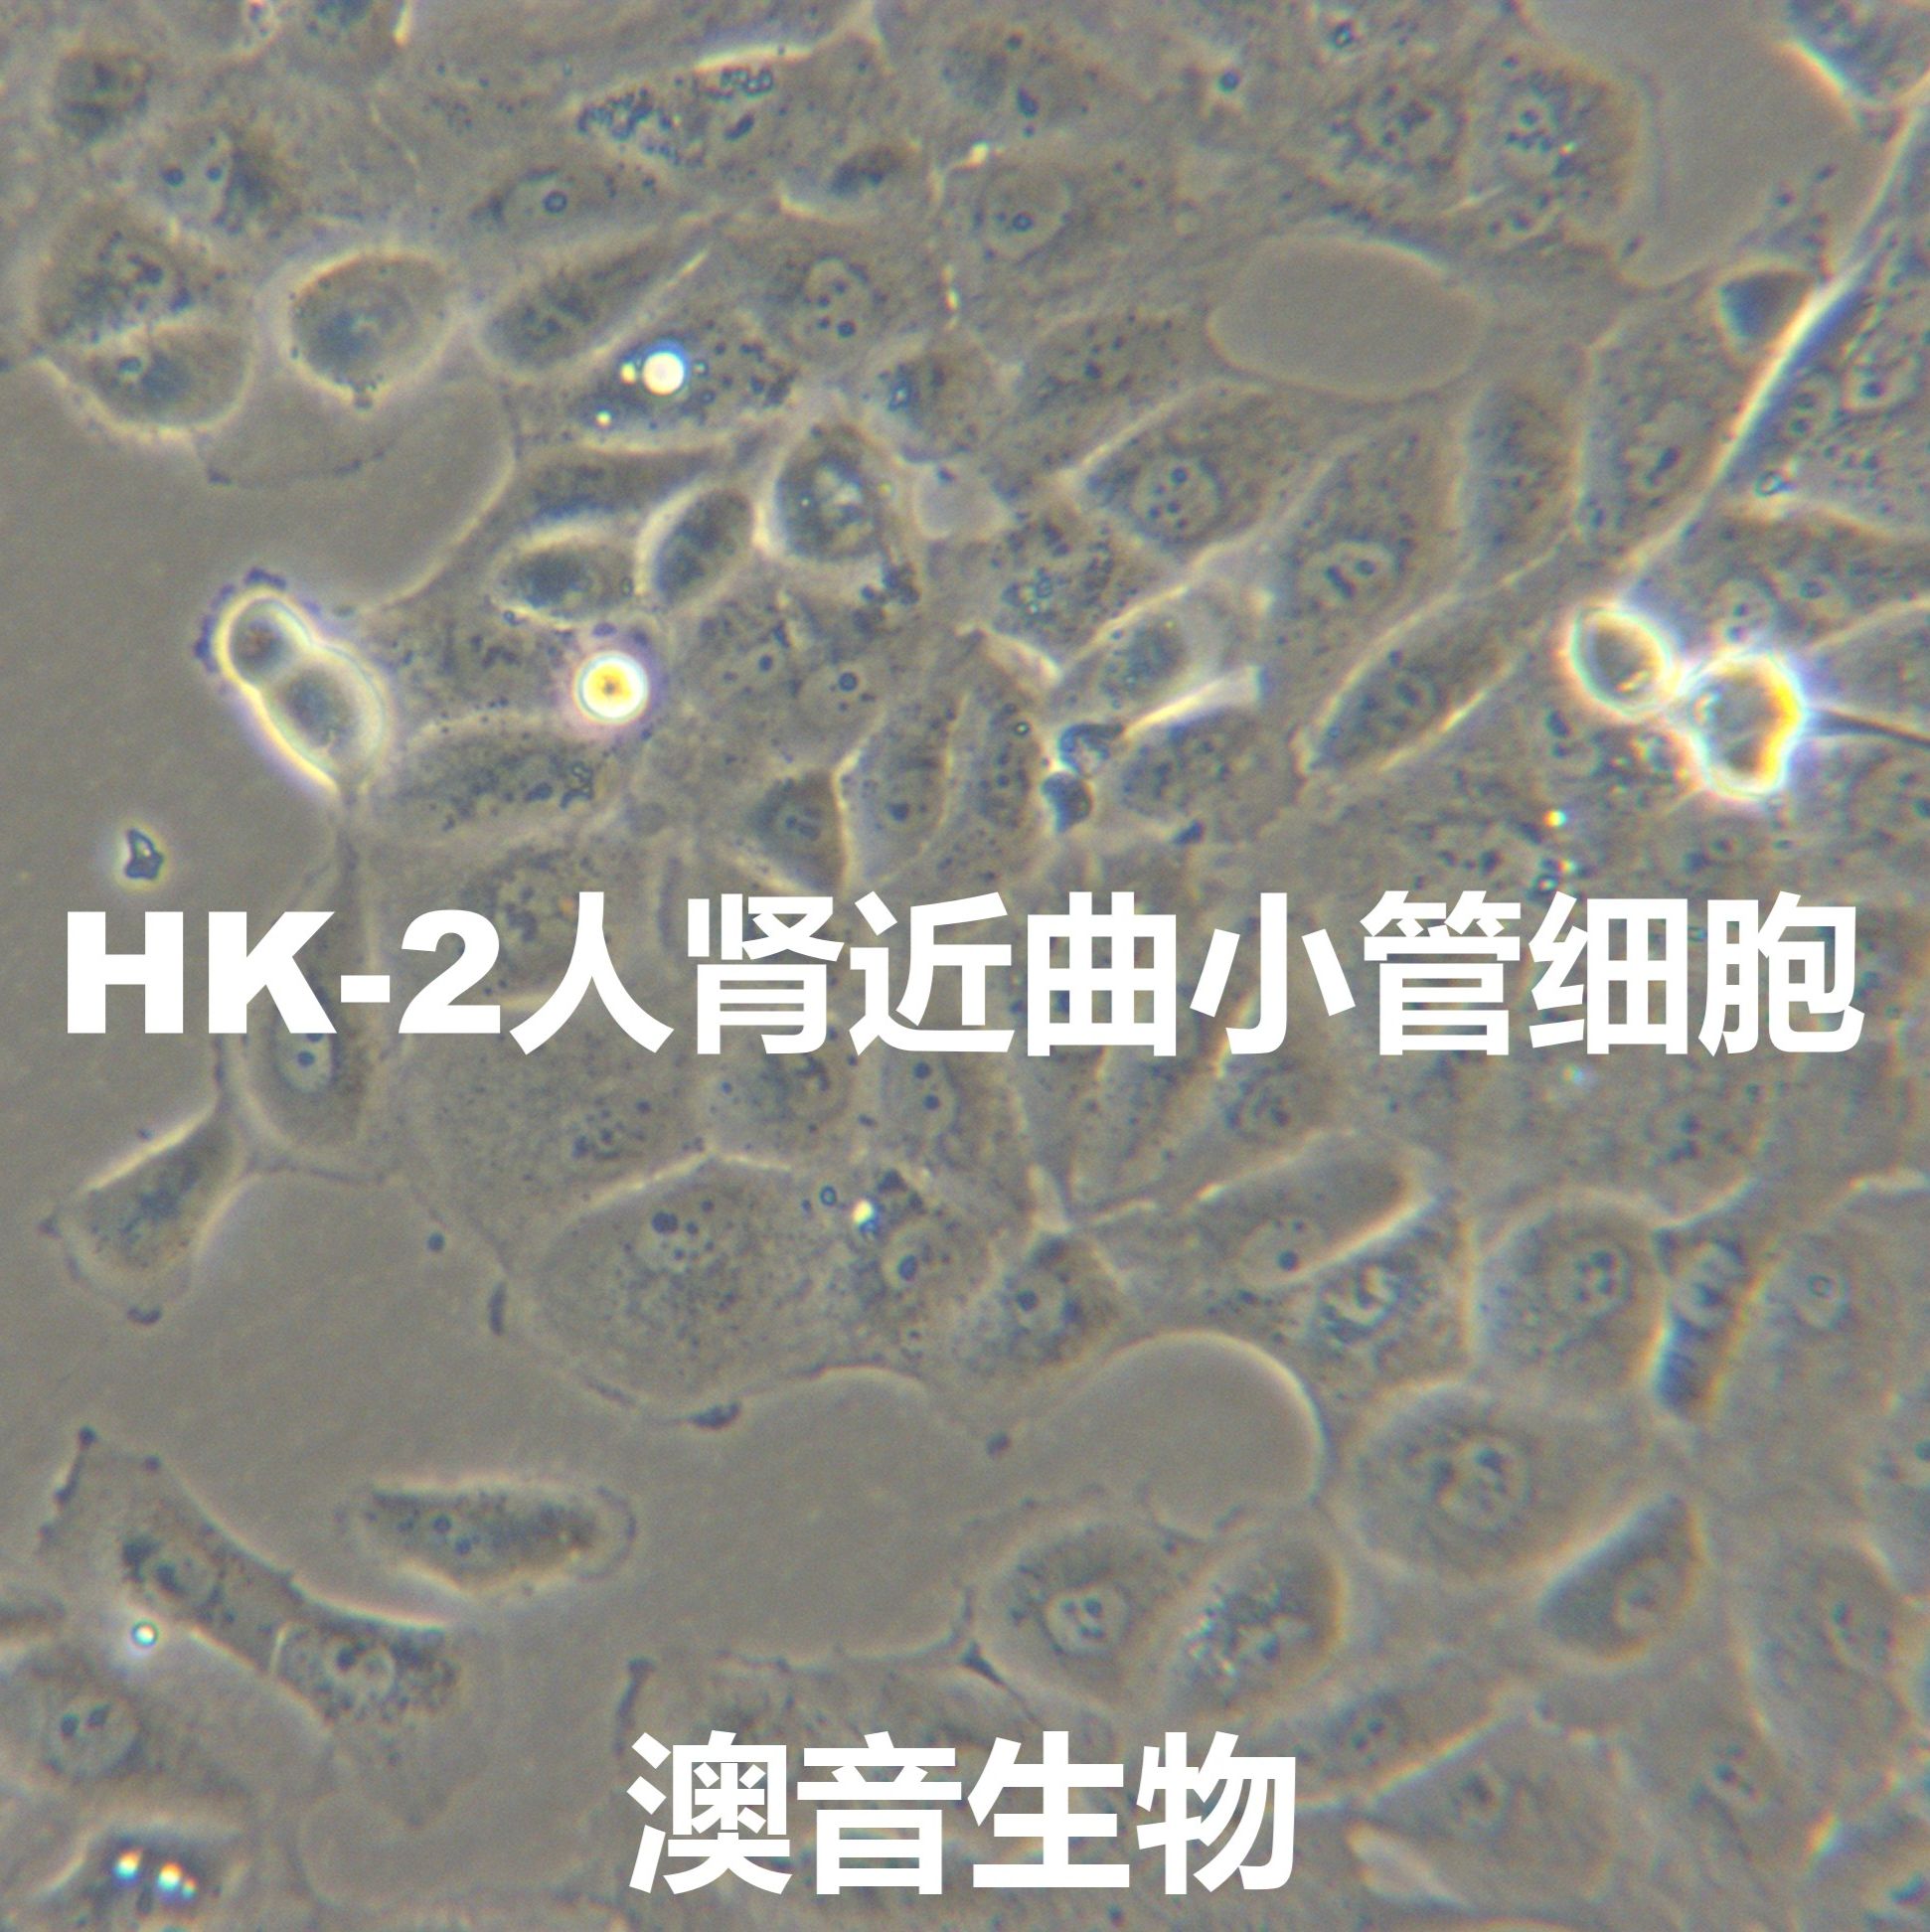 HK-2【Hk-2; HK2; Human Kidney-2】人肾近曲小管细胞